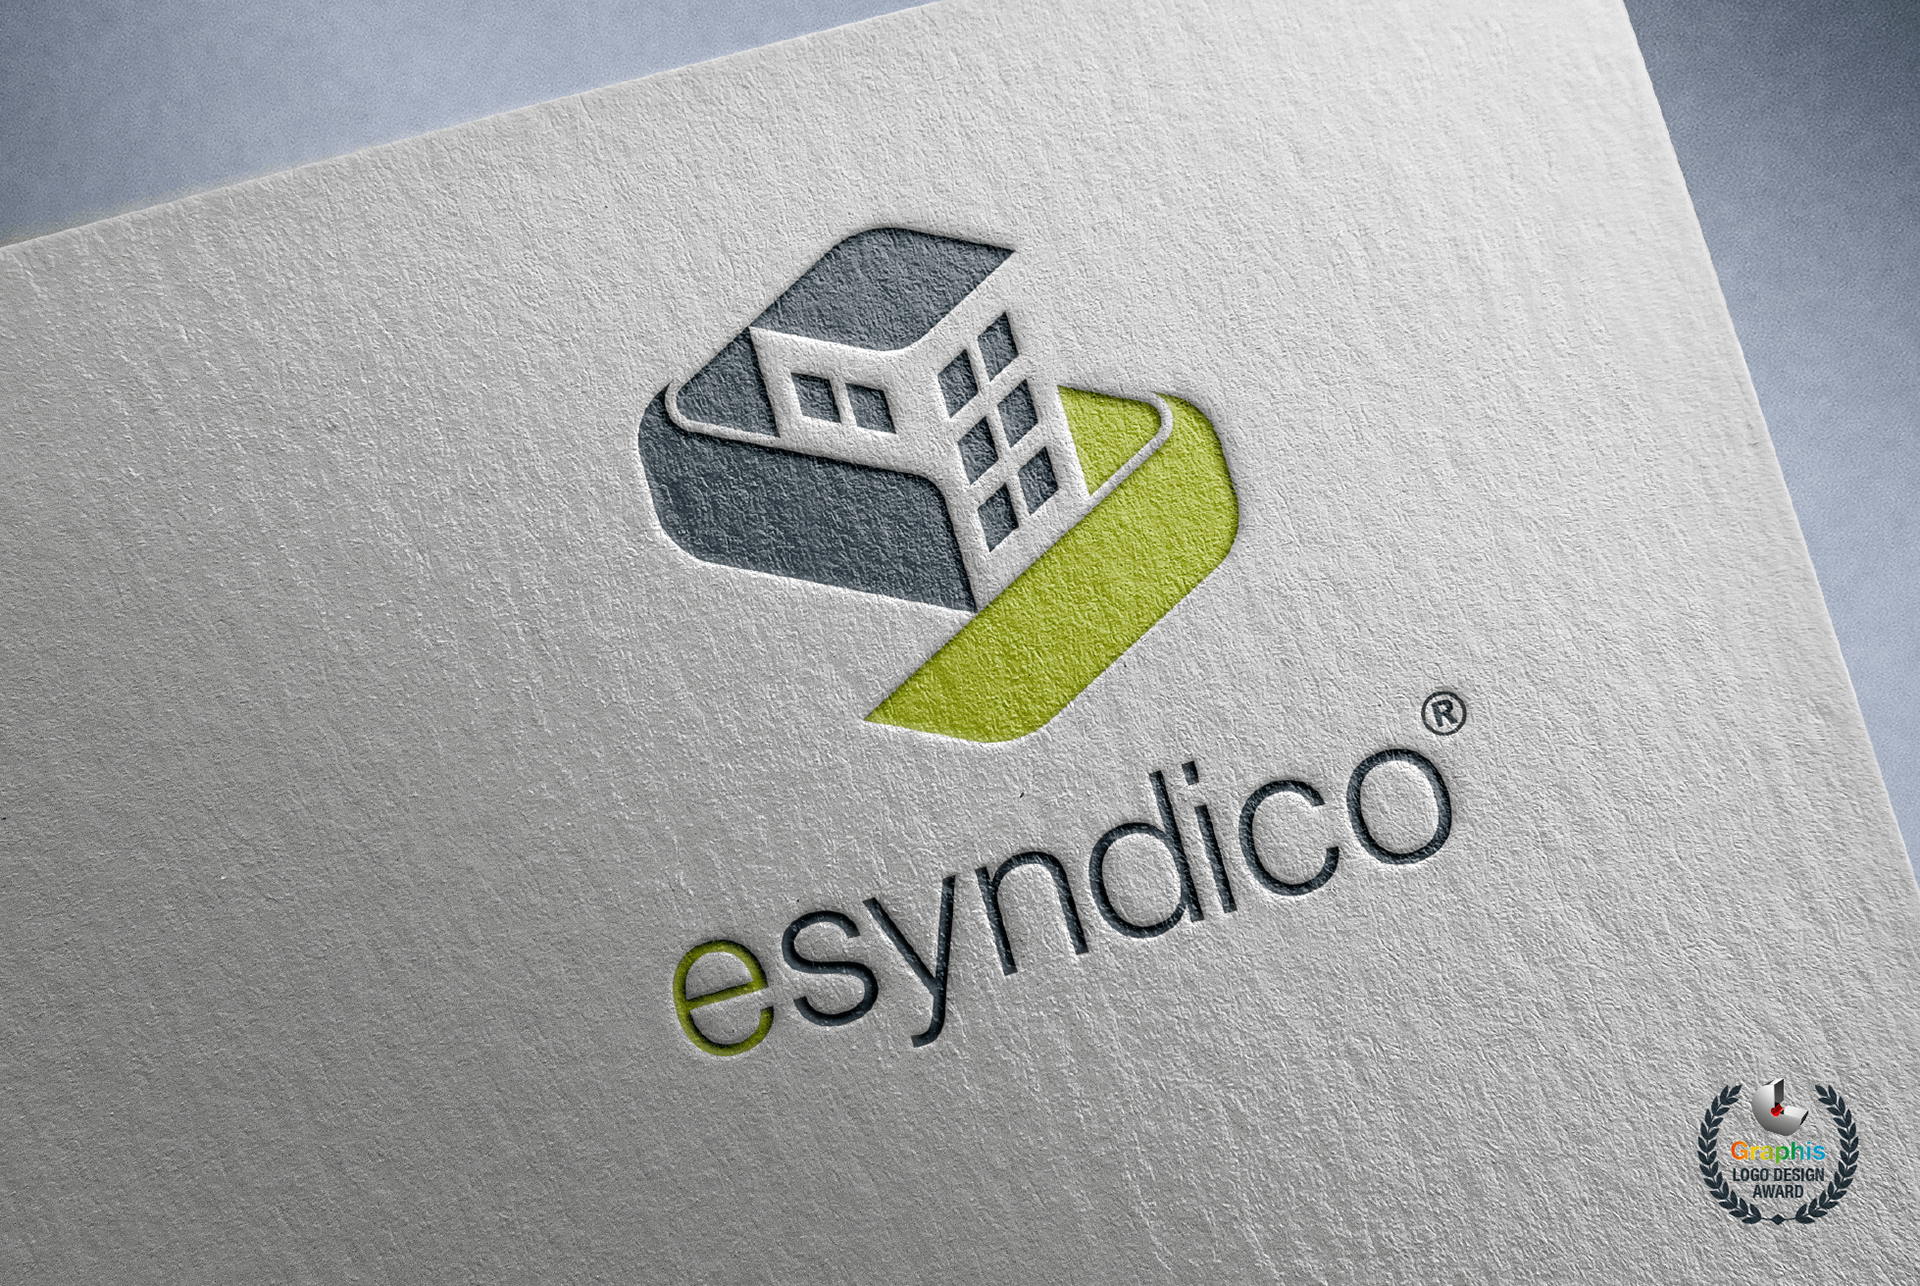 esyndico_brandmark_letterpress